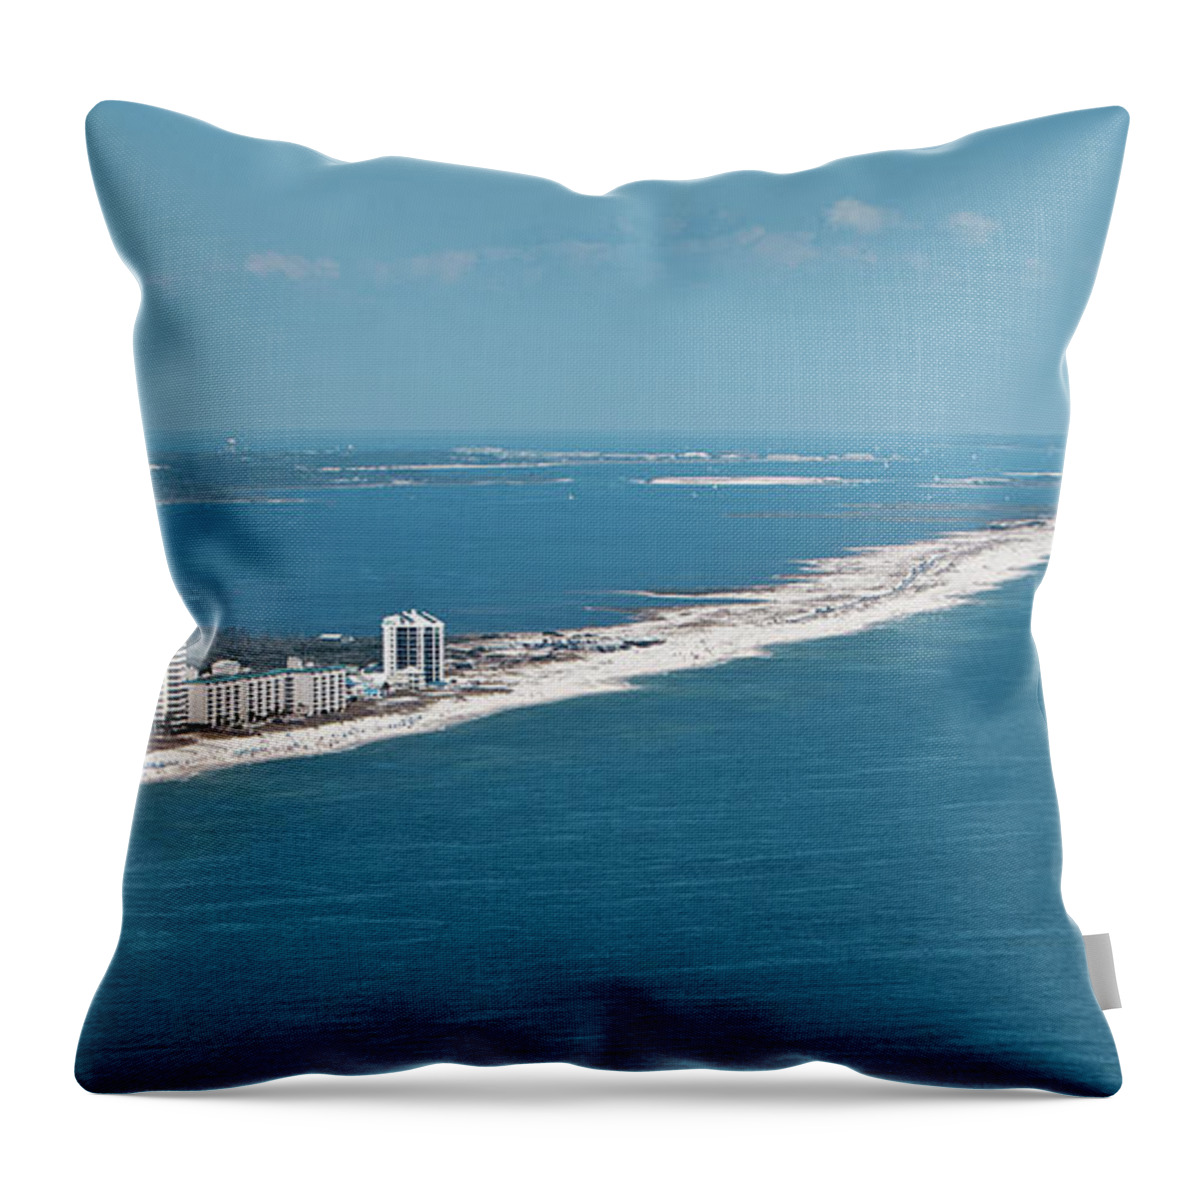 Johnson Beach Throw Pillow featuring the photograph Johnson Beach by Gulf Coast Aerials -